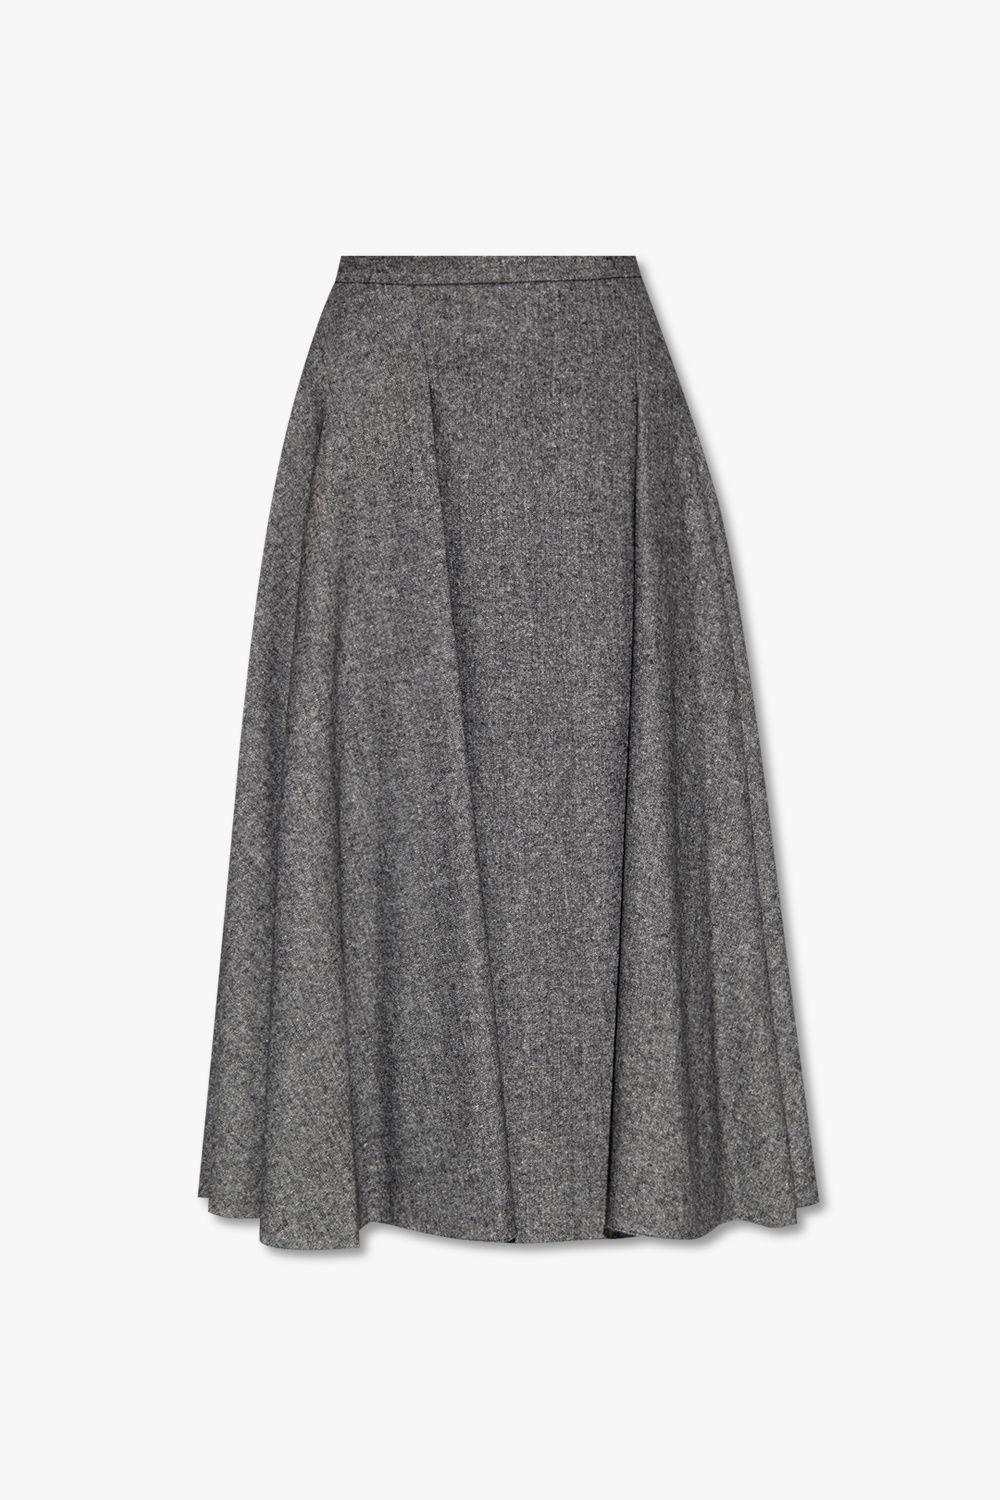 Erdem 'sonya' Flared Skirt in Gray | Lyst